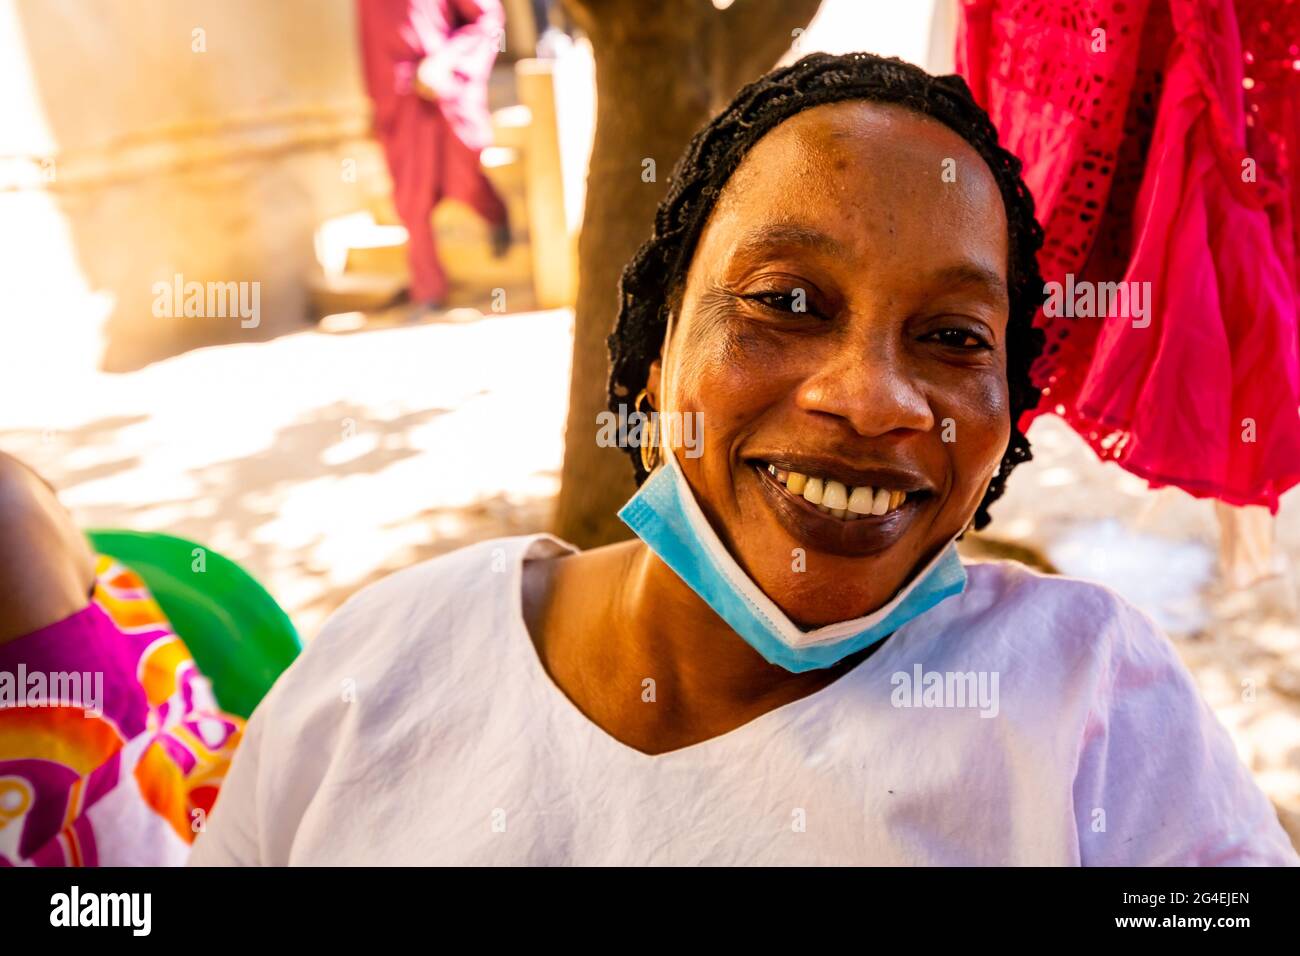 MBOUR, SÉNÉGAL - JANVIER CIRCA, 2021. sénégalaise non identifiée jolie femme mûre en robe traditionnelle en plein air regardant sourire. Pauvreté et bonheur Banque D'Images